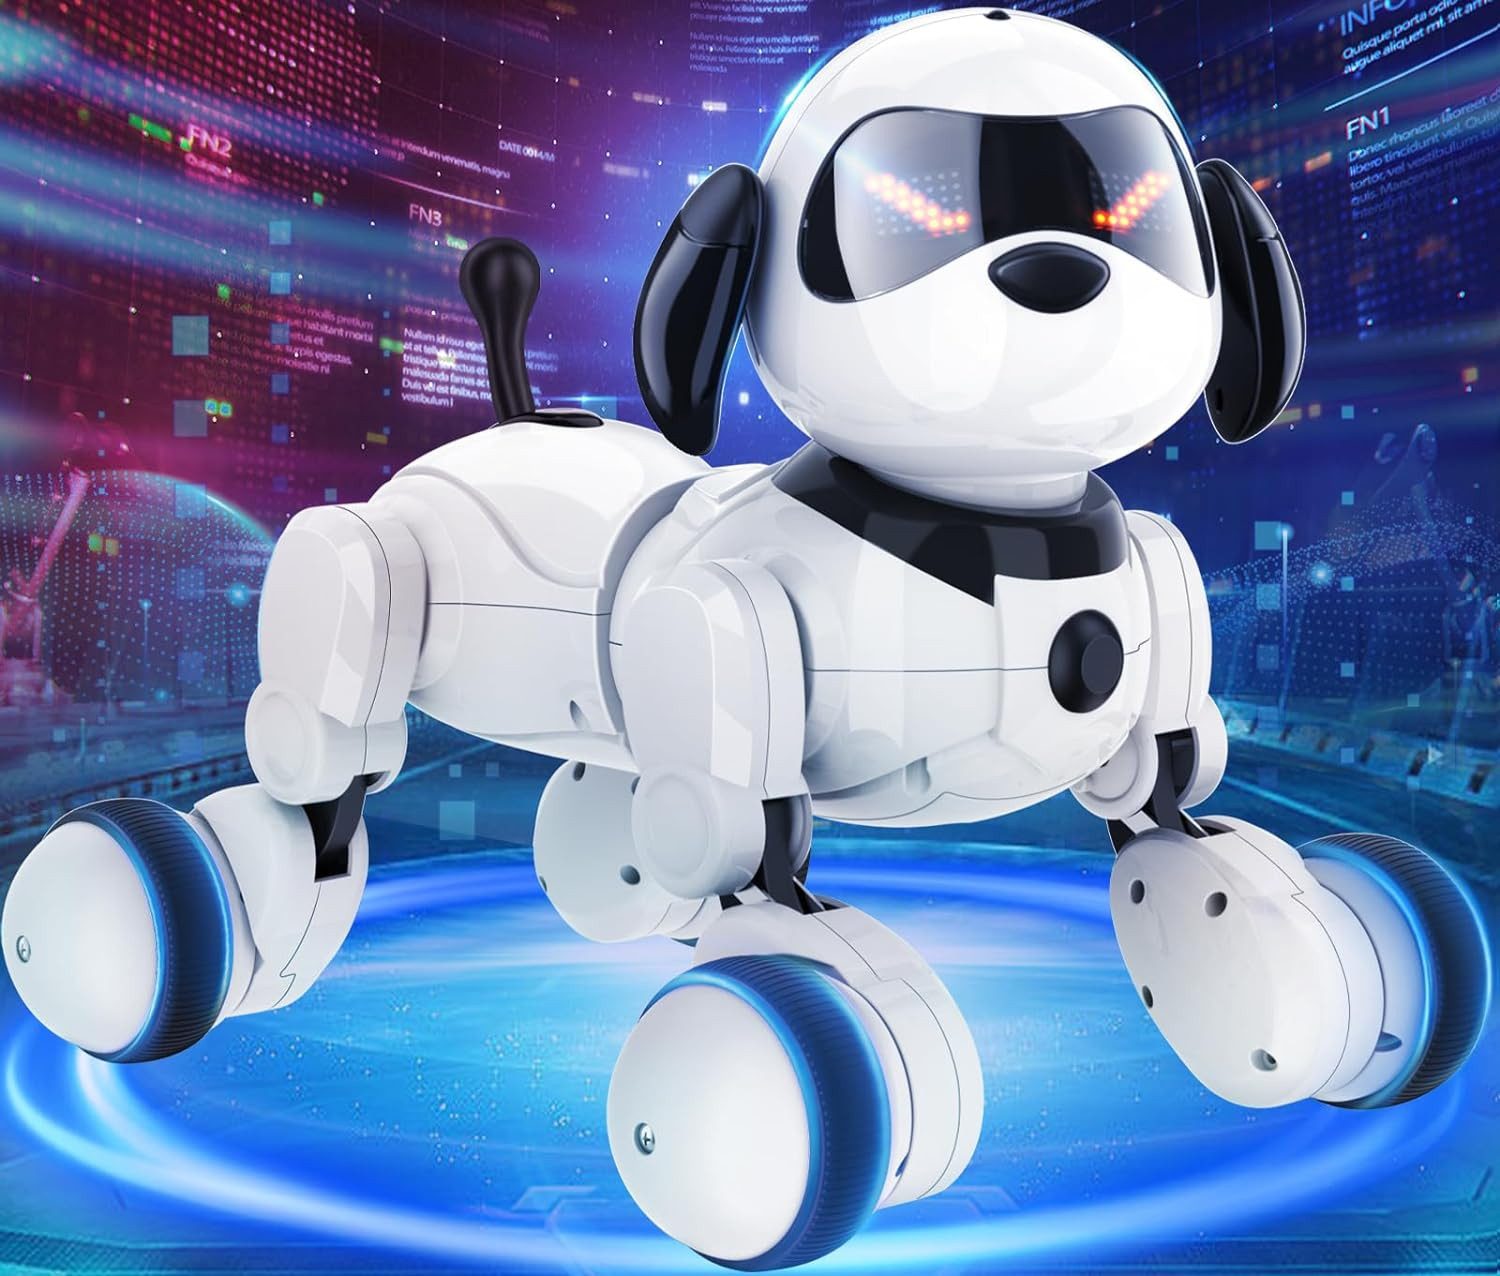 Powerwill RC-Roboter Smart Robots Hundespielzeug für Kinder,Fernbedienung und APP-Steuerung, mit Sprachsteuerung, Sing-, Tanz- und Touch-Funktion und LED-Augen